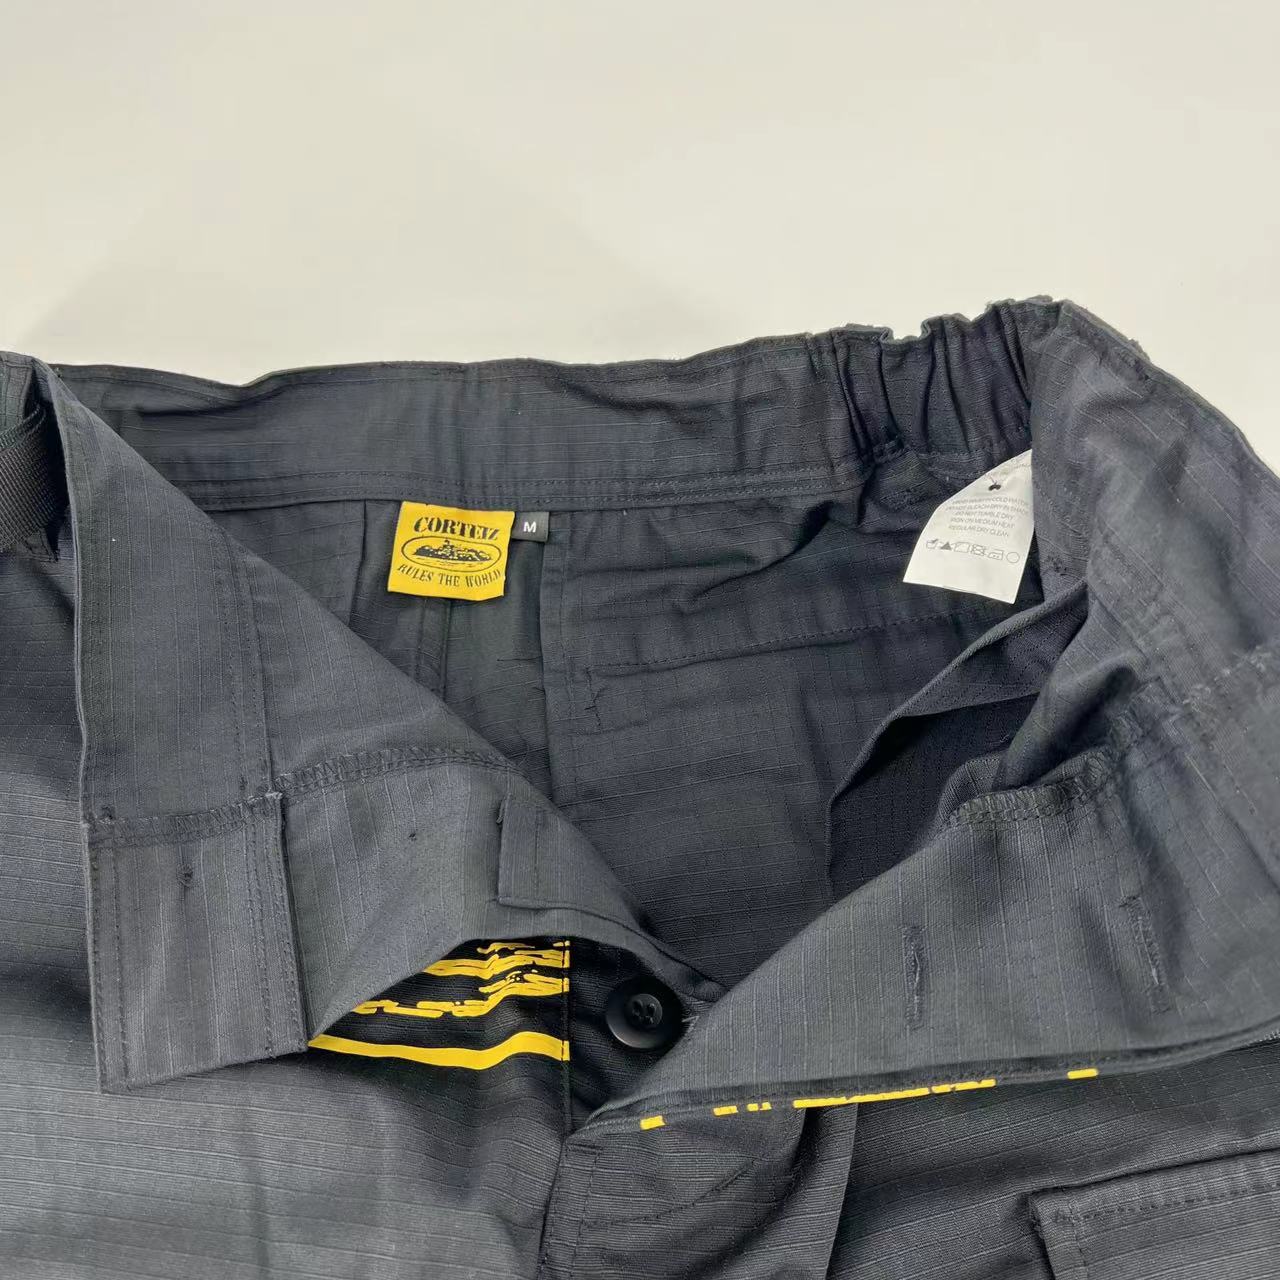 SADWF Corteiz Cargo Pantalones De Trabajo Holgados con Botones